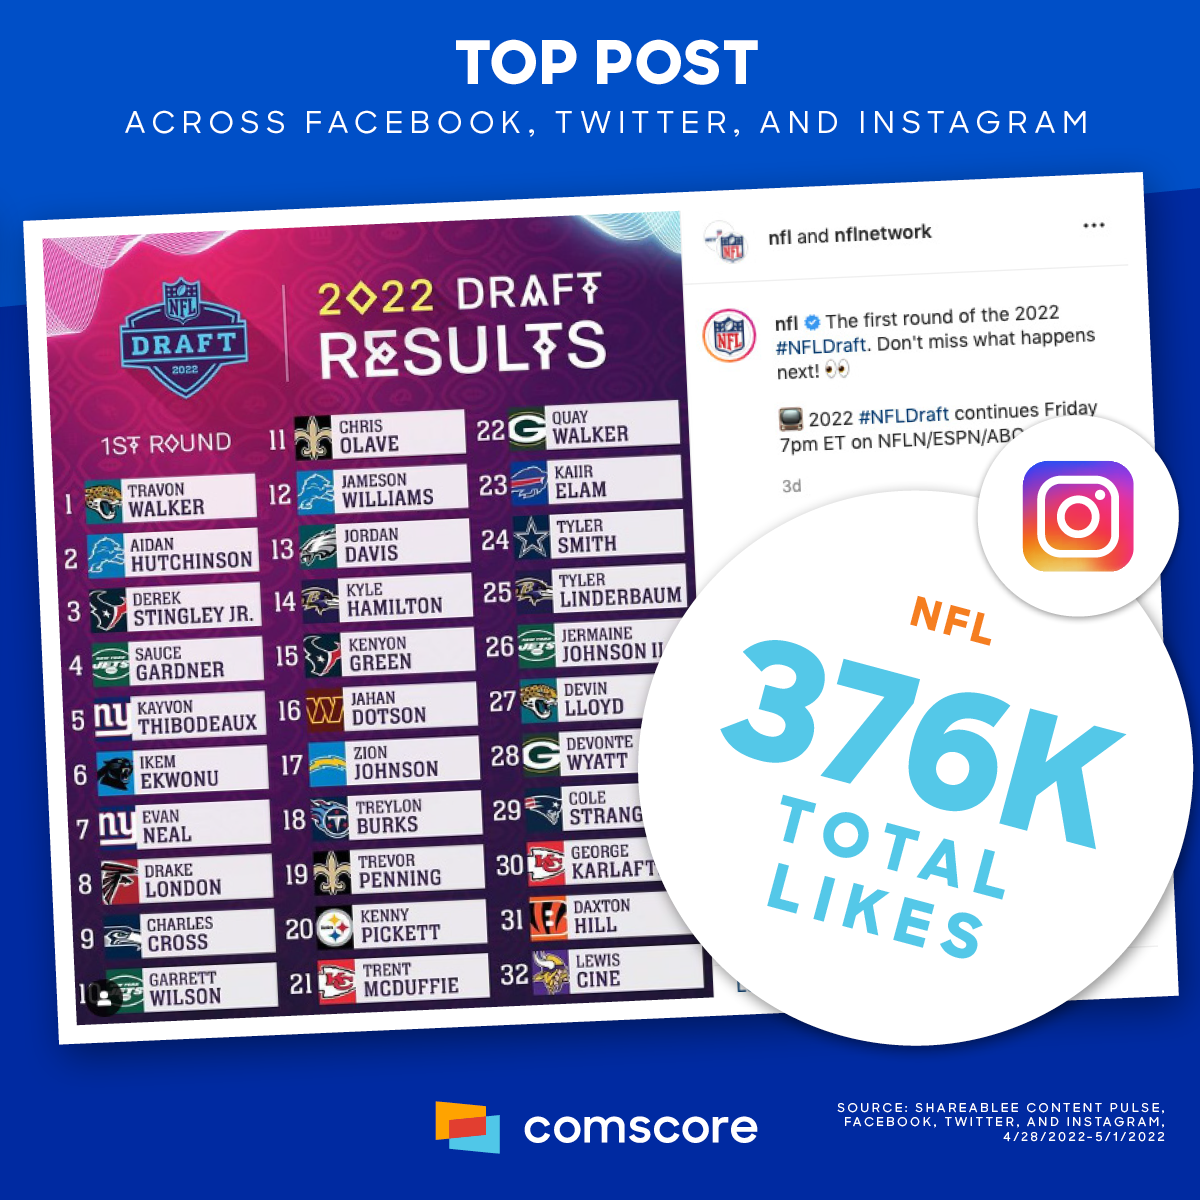 Top-Post-Across-Facebook-Twitter-Instagram